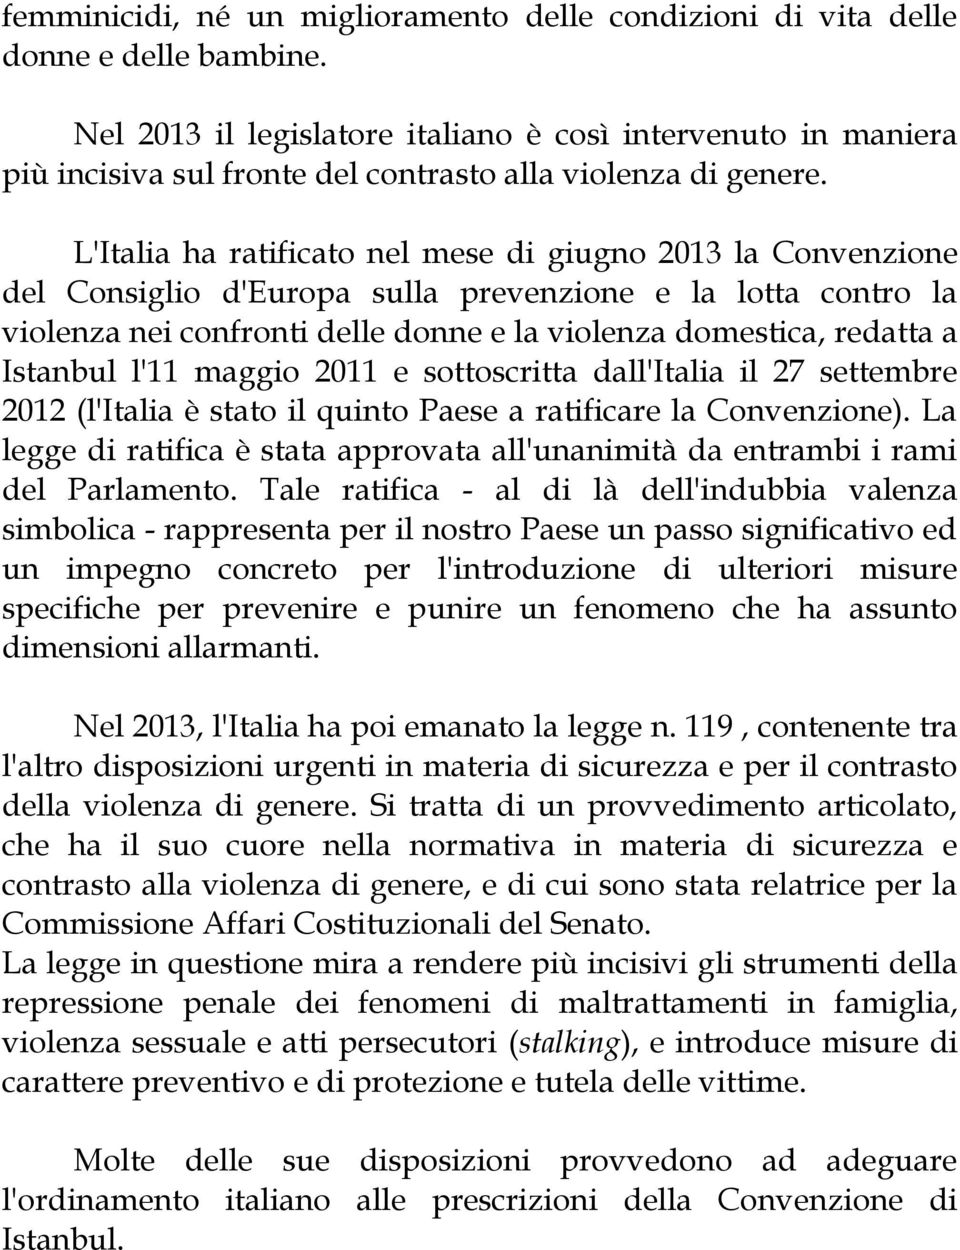 L'Italia ha ratificato nel mese di giugno 2013 la Convenzione del Consiglio d'europa sulla prevenzione e la lotta contro la violenza nei confronti delle donne e la violenza domestica, redatta a